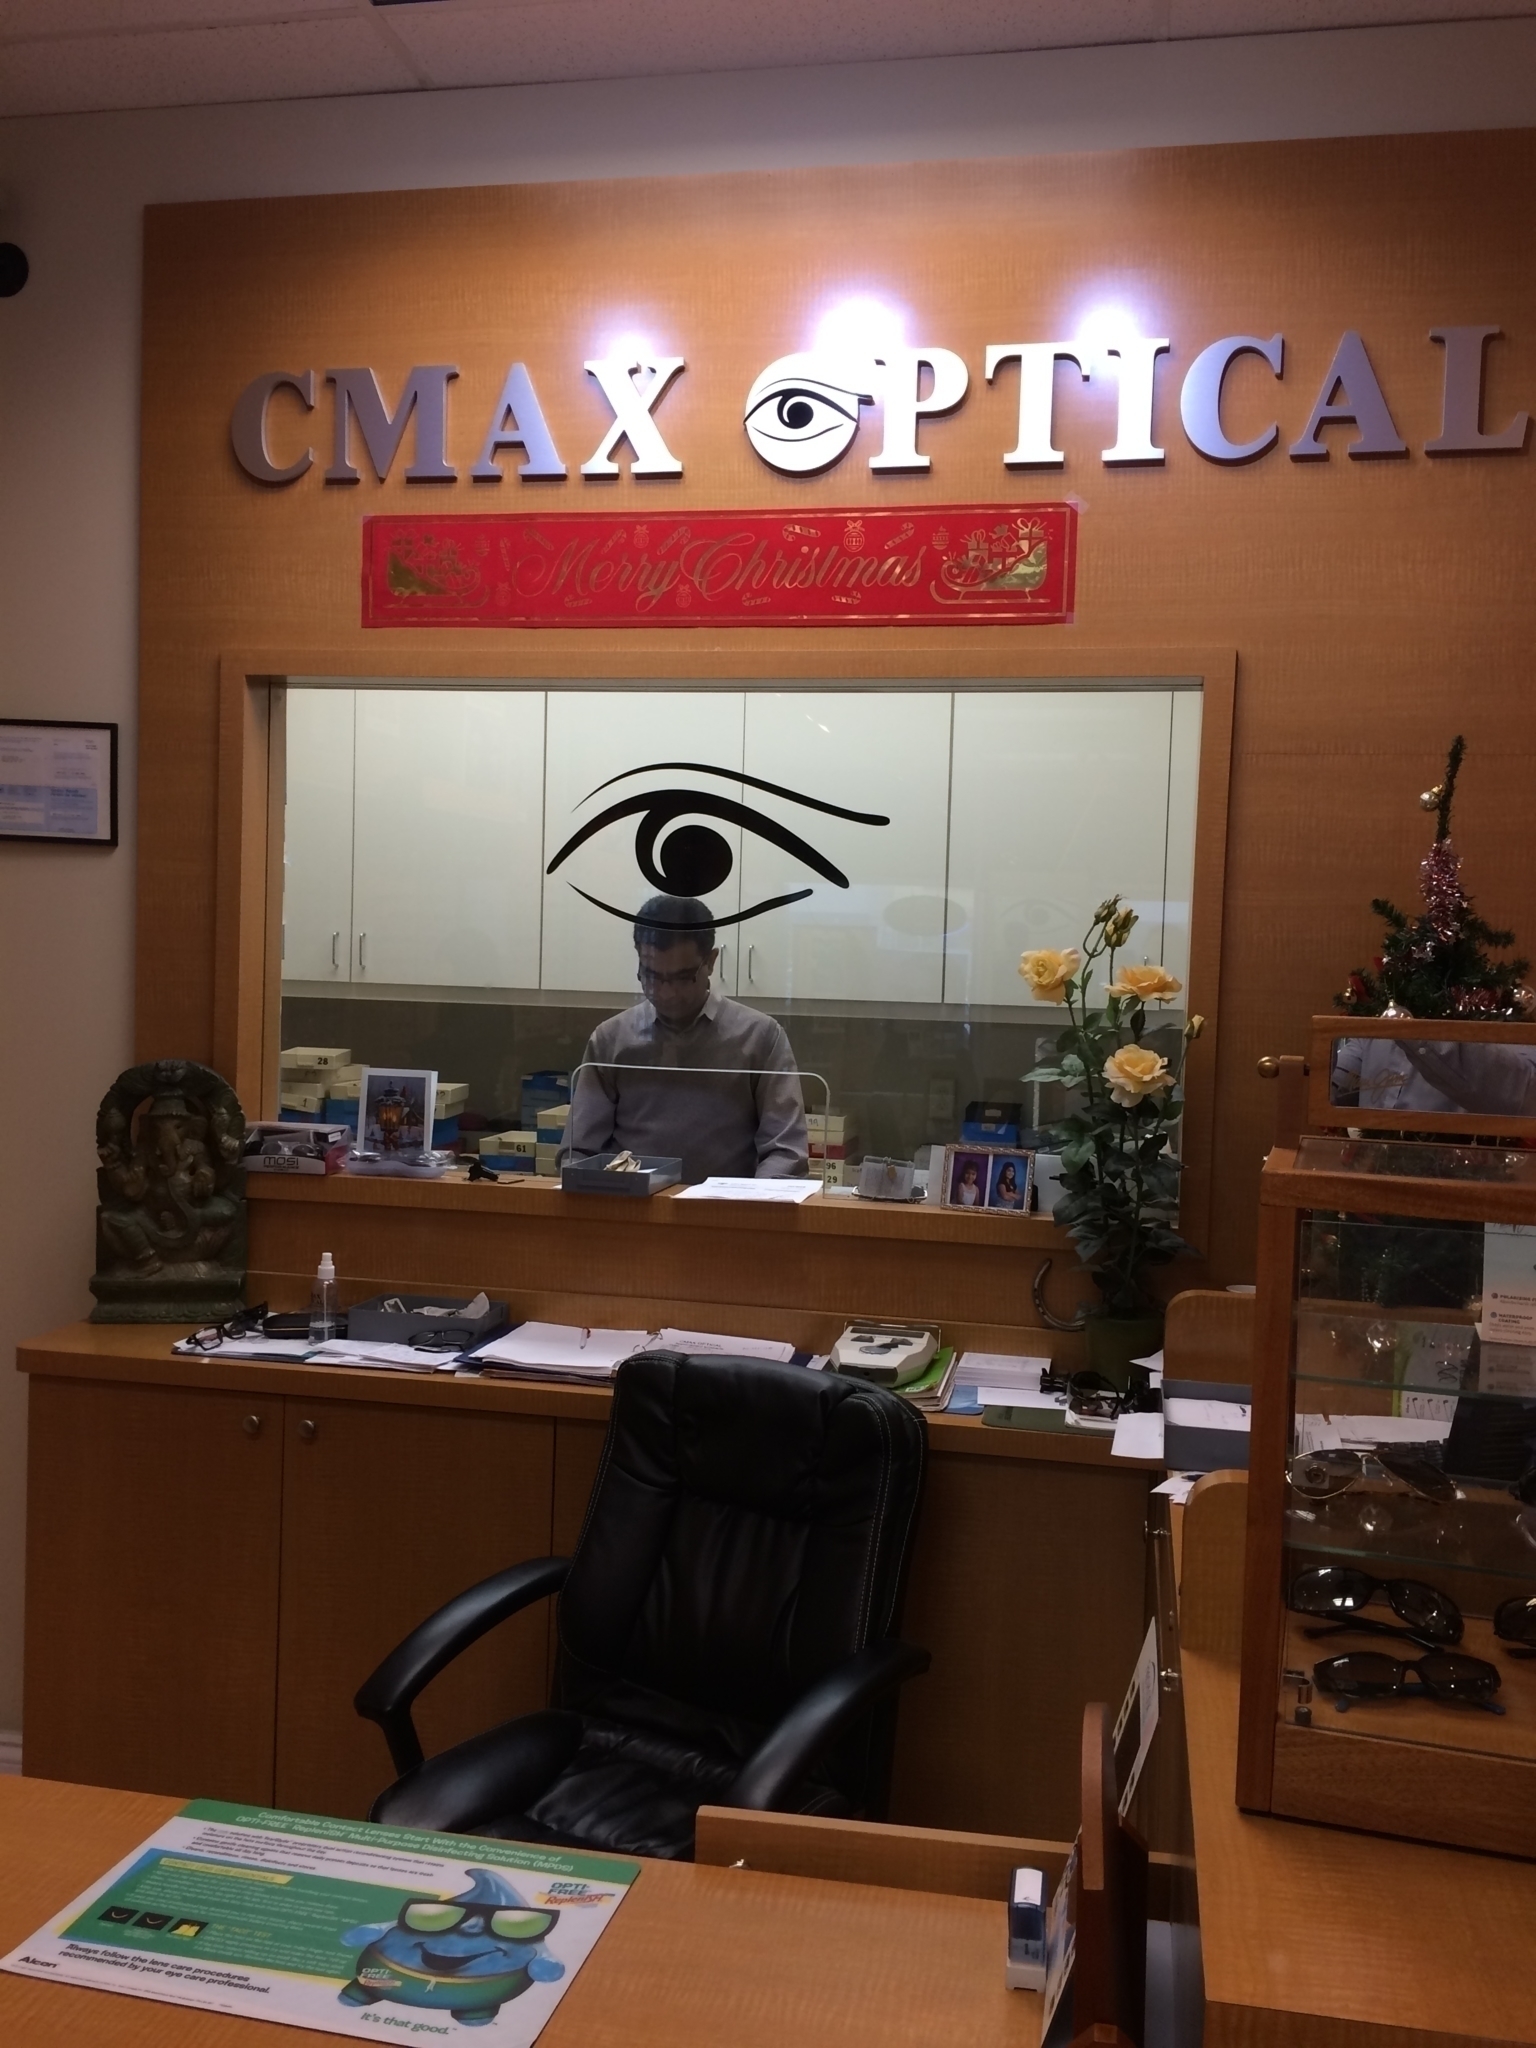 Cmax Optical - Opticians